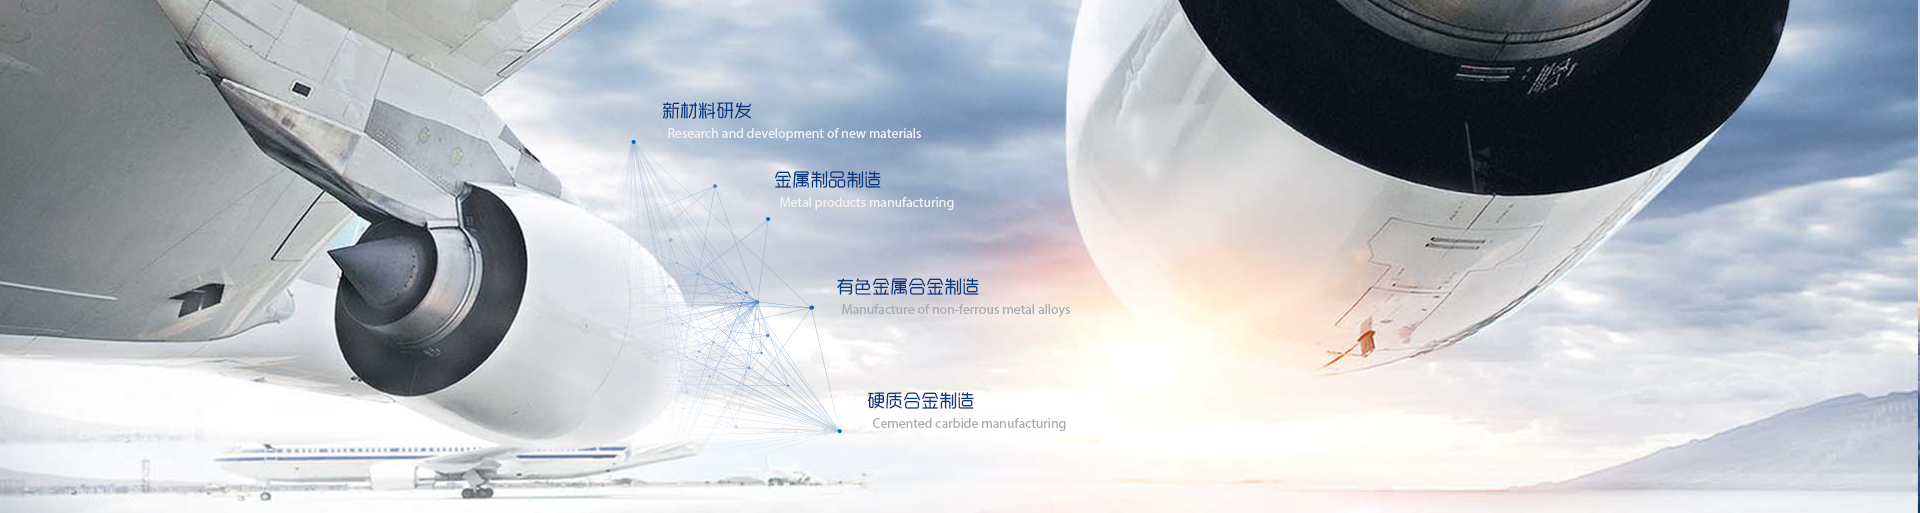 Zhuzhou Weilai New Materials Technology Co., Ltd.